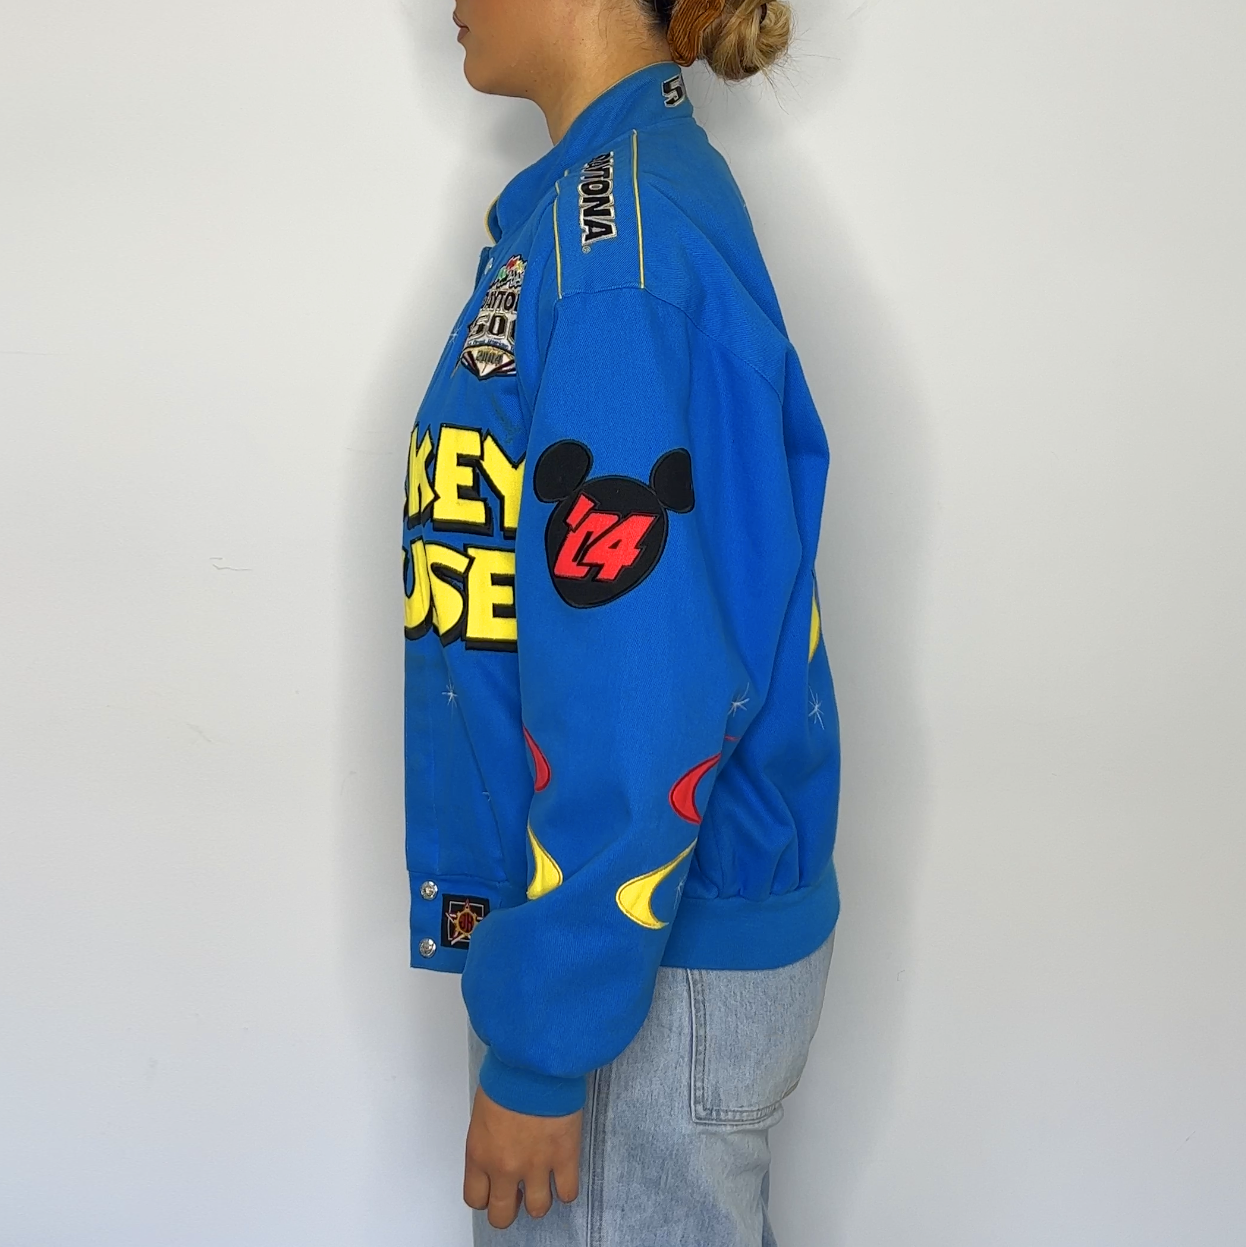 Mickey Mouse Nascar Jacket | JH Design